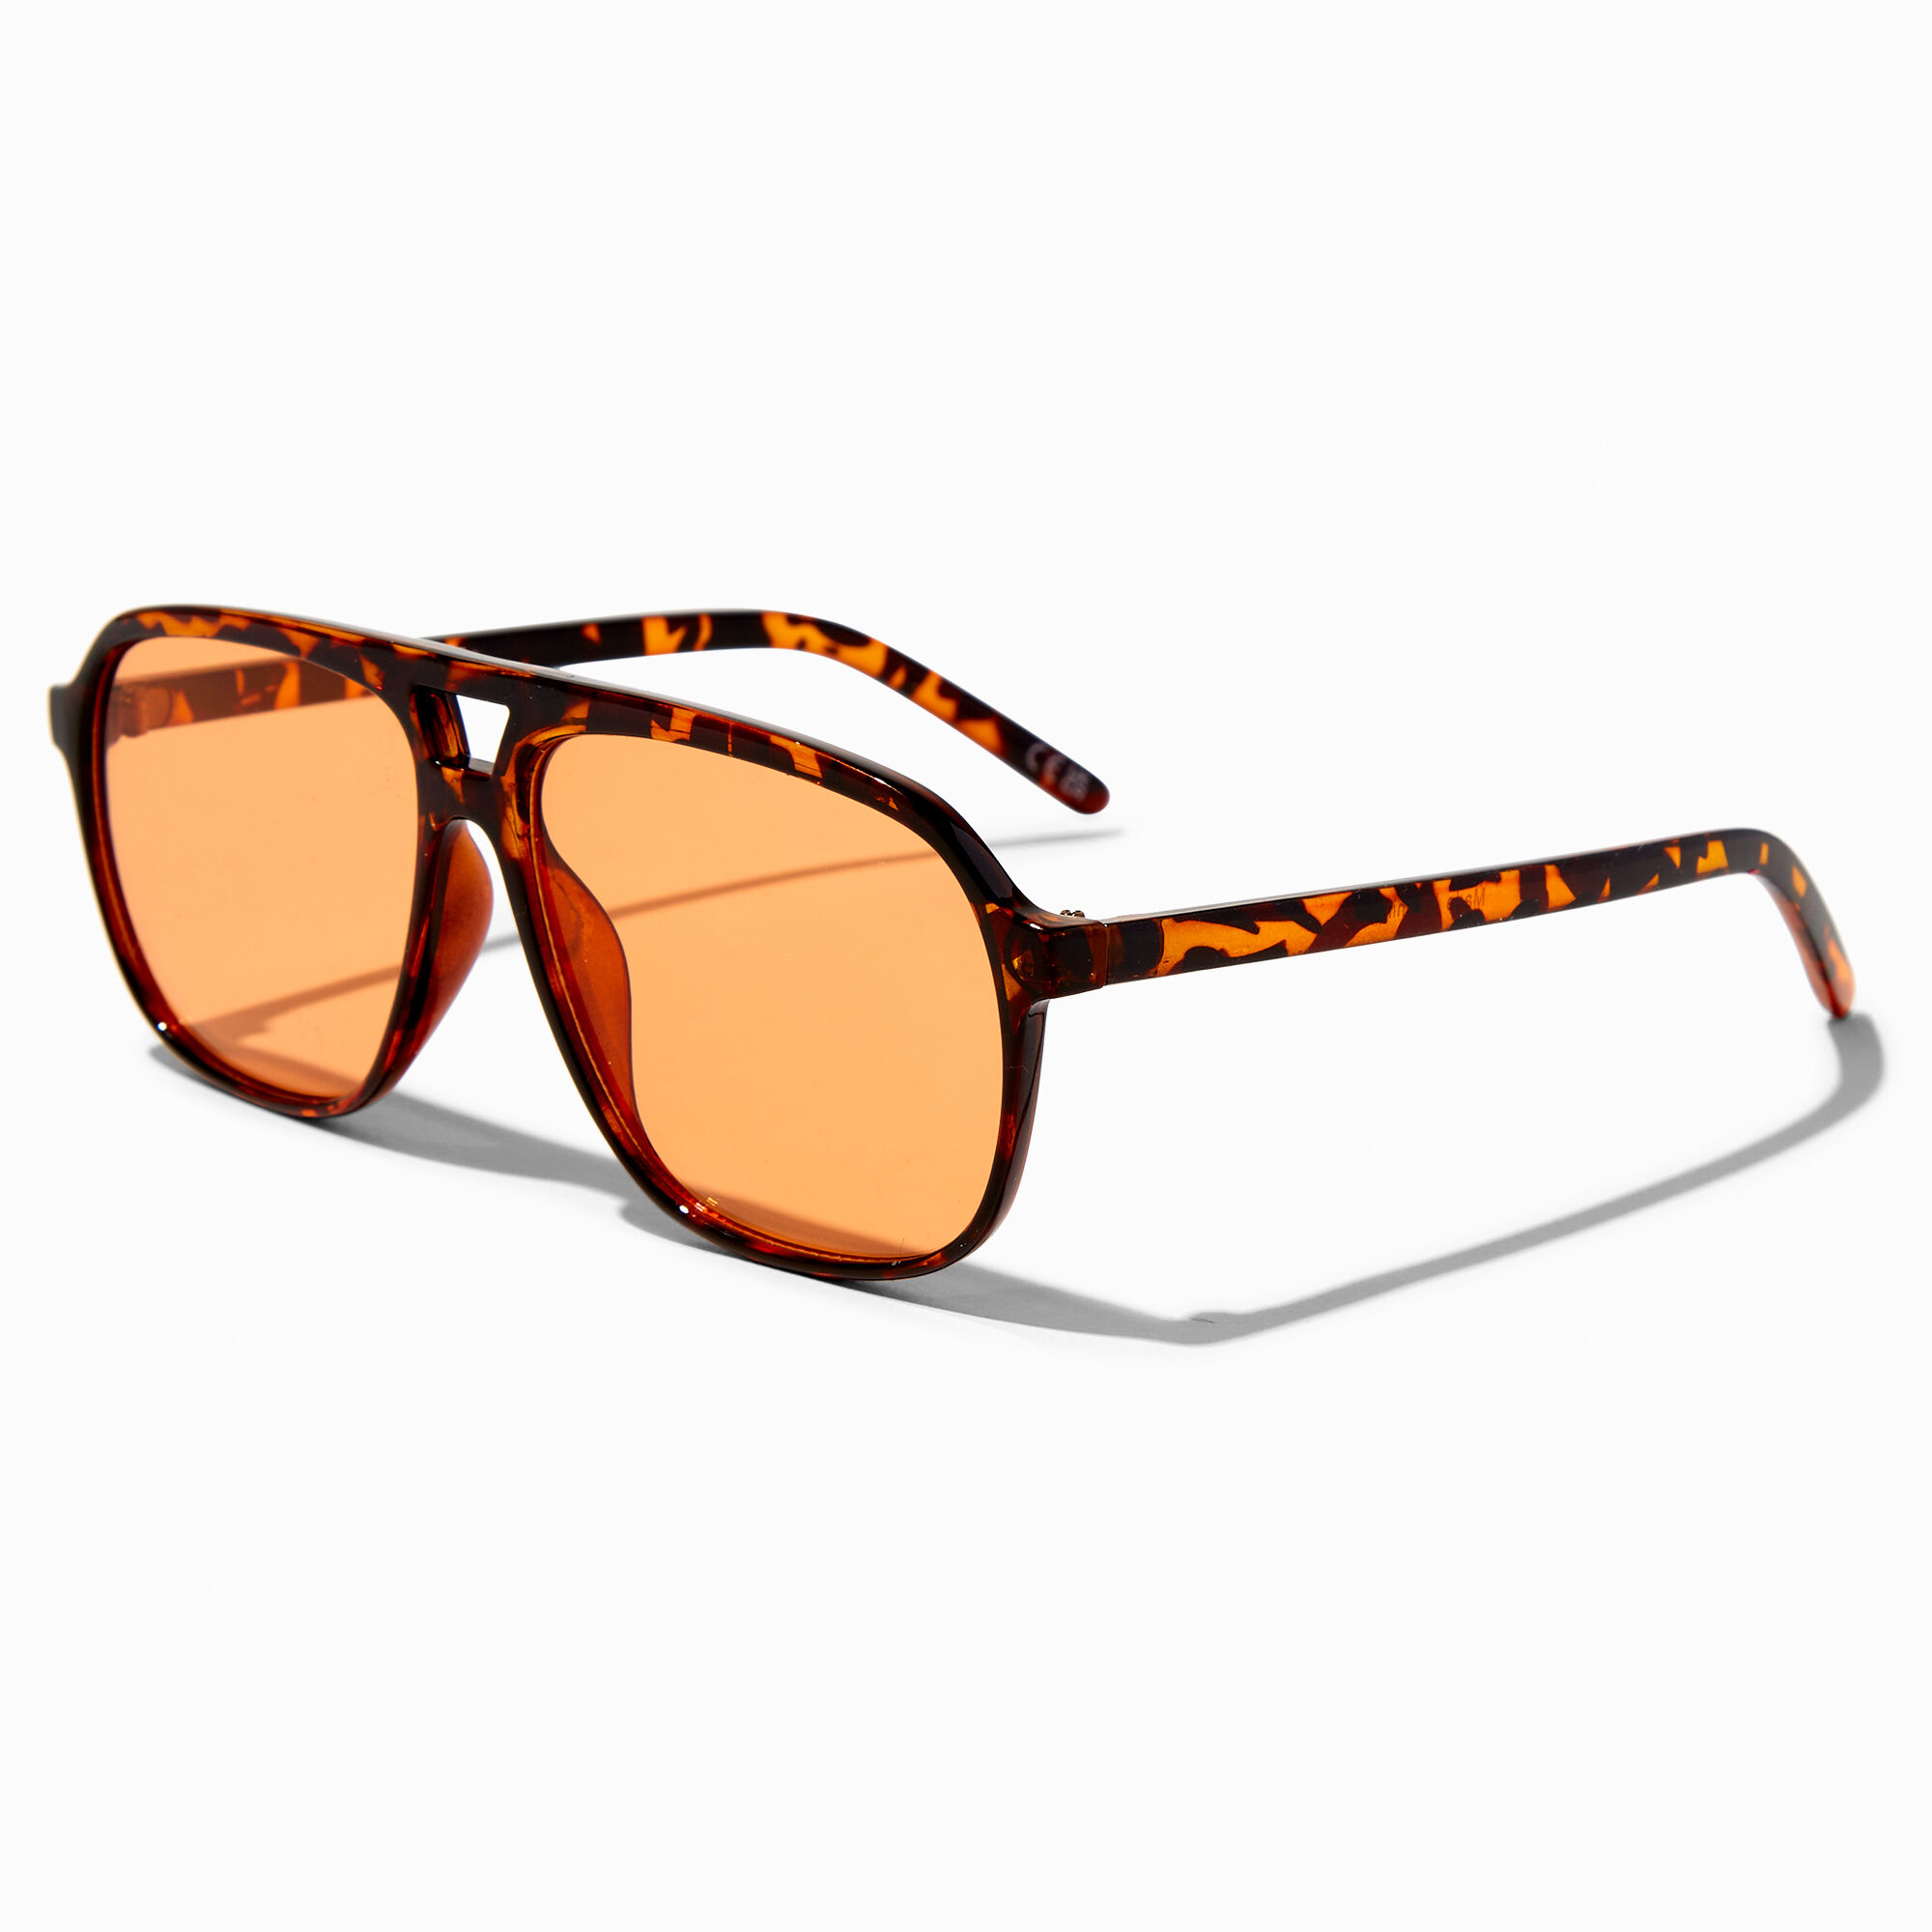 Sunglasses Kids New Round Sienna | Grech & Co | U | Orange dark |  GRE5776701ORAU